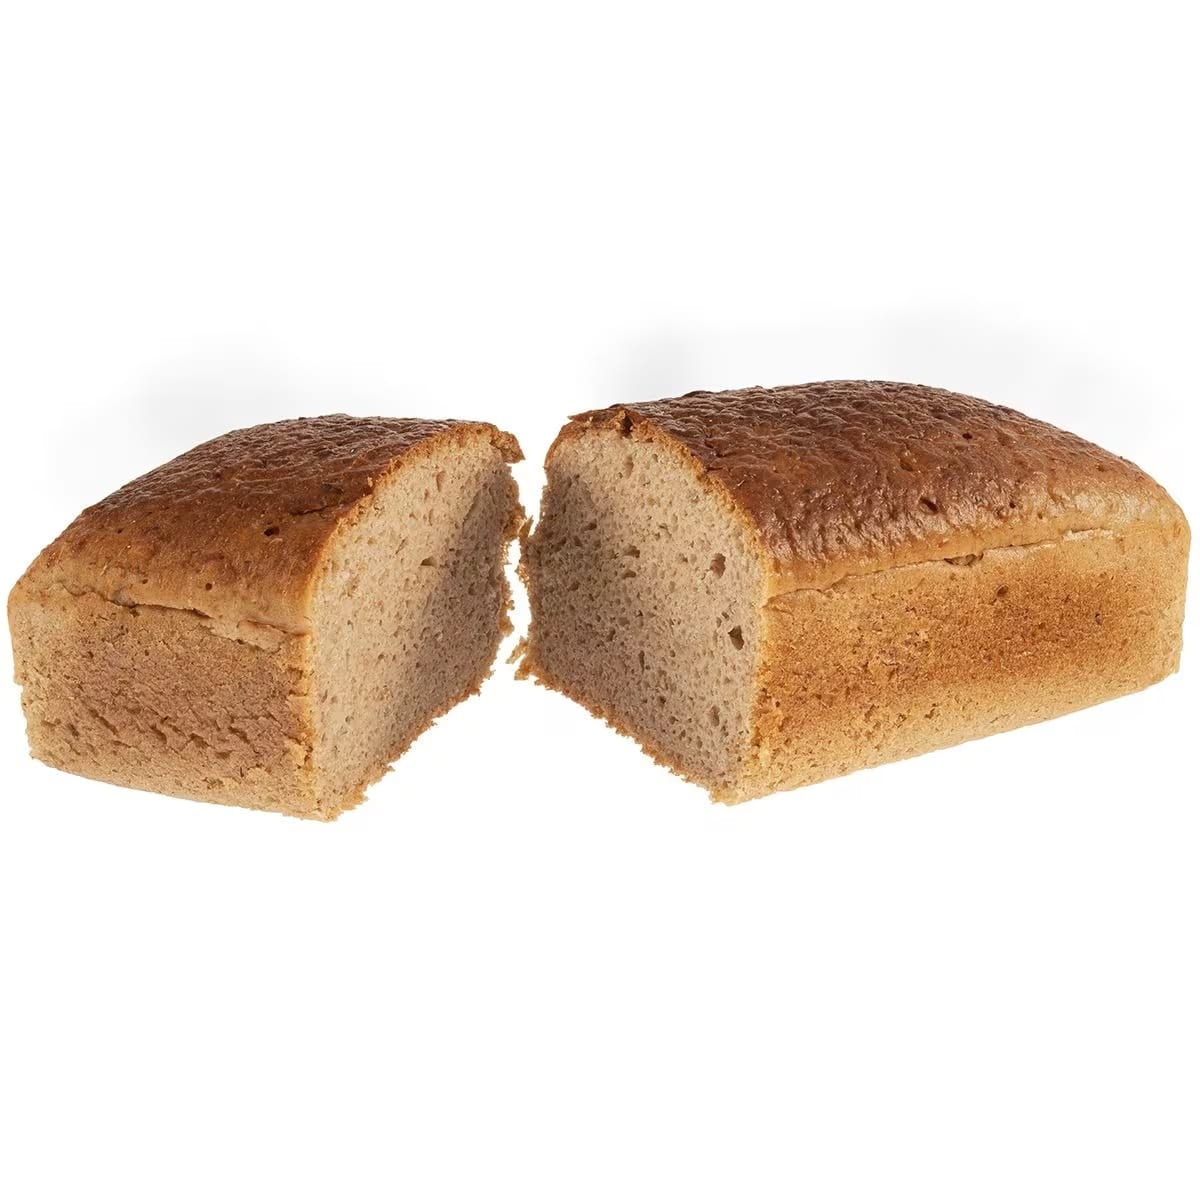 Chleb wojskowy pytlowy trwały 24 miesiące - 12 x 700 g